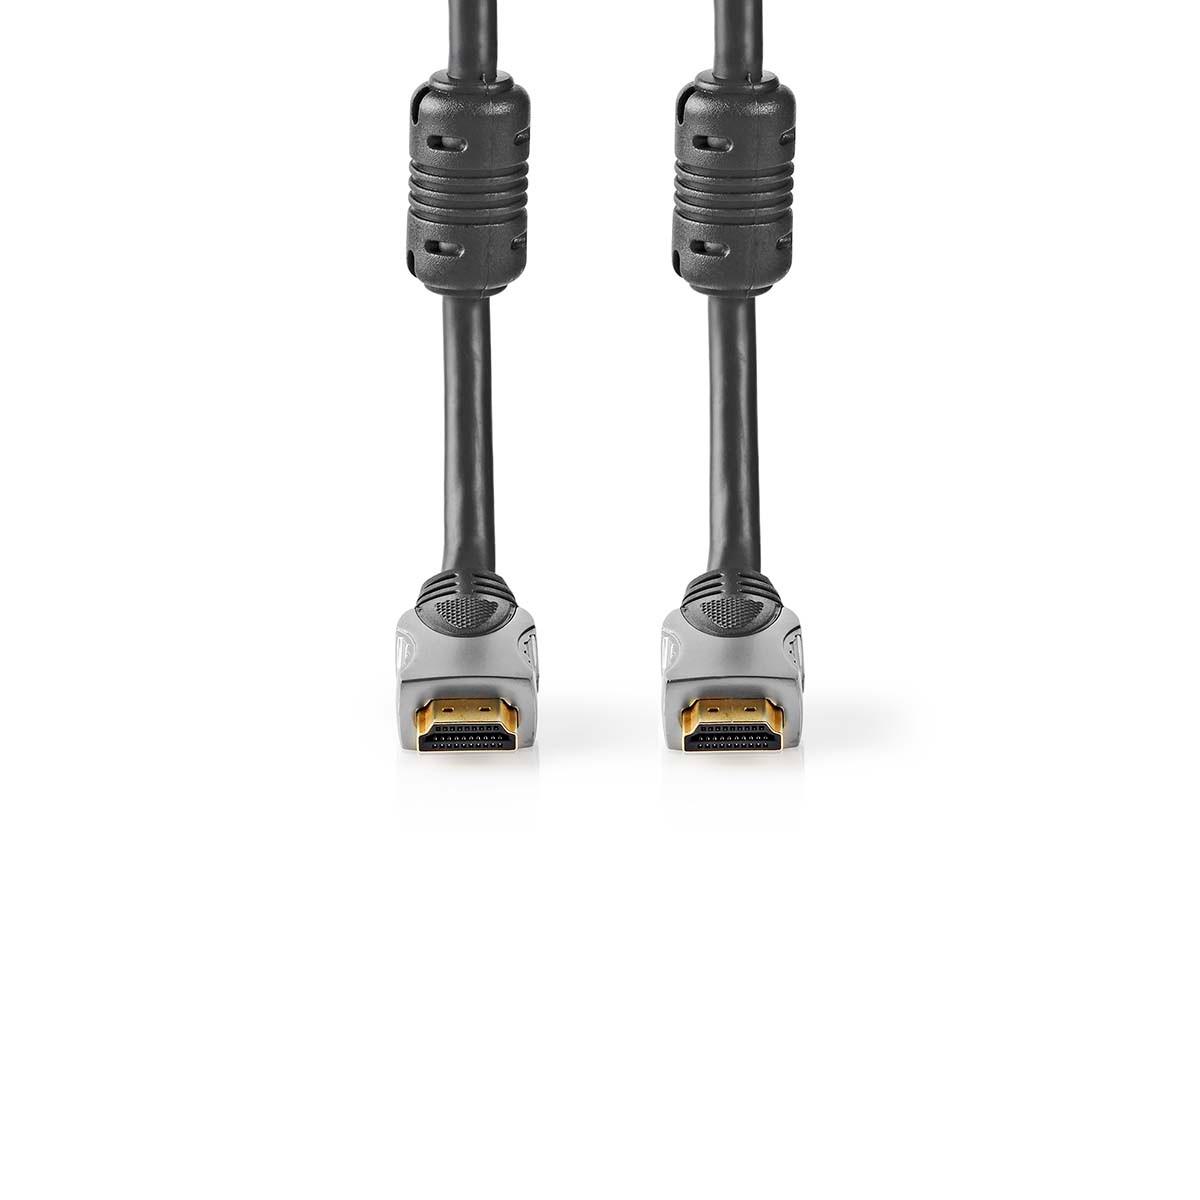 Nedis  Câble HDMI™ haute vitesse avec Ethernet | Connecteur HDMI™ | Connecteur HDMI™ | 4K@30Hz | 10,2 Gbps | 10,0 m | Rond | PVC | Anthracite | Boîte 